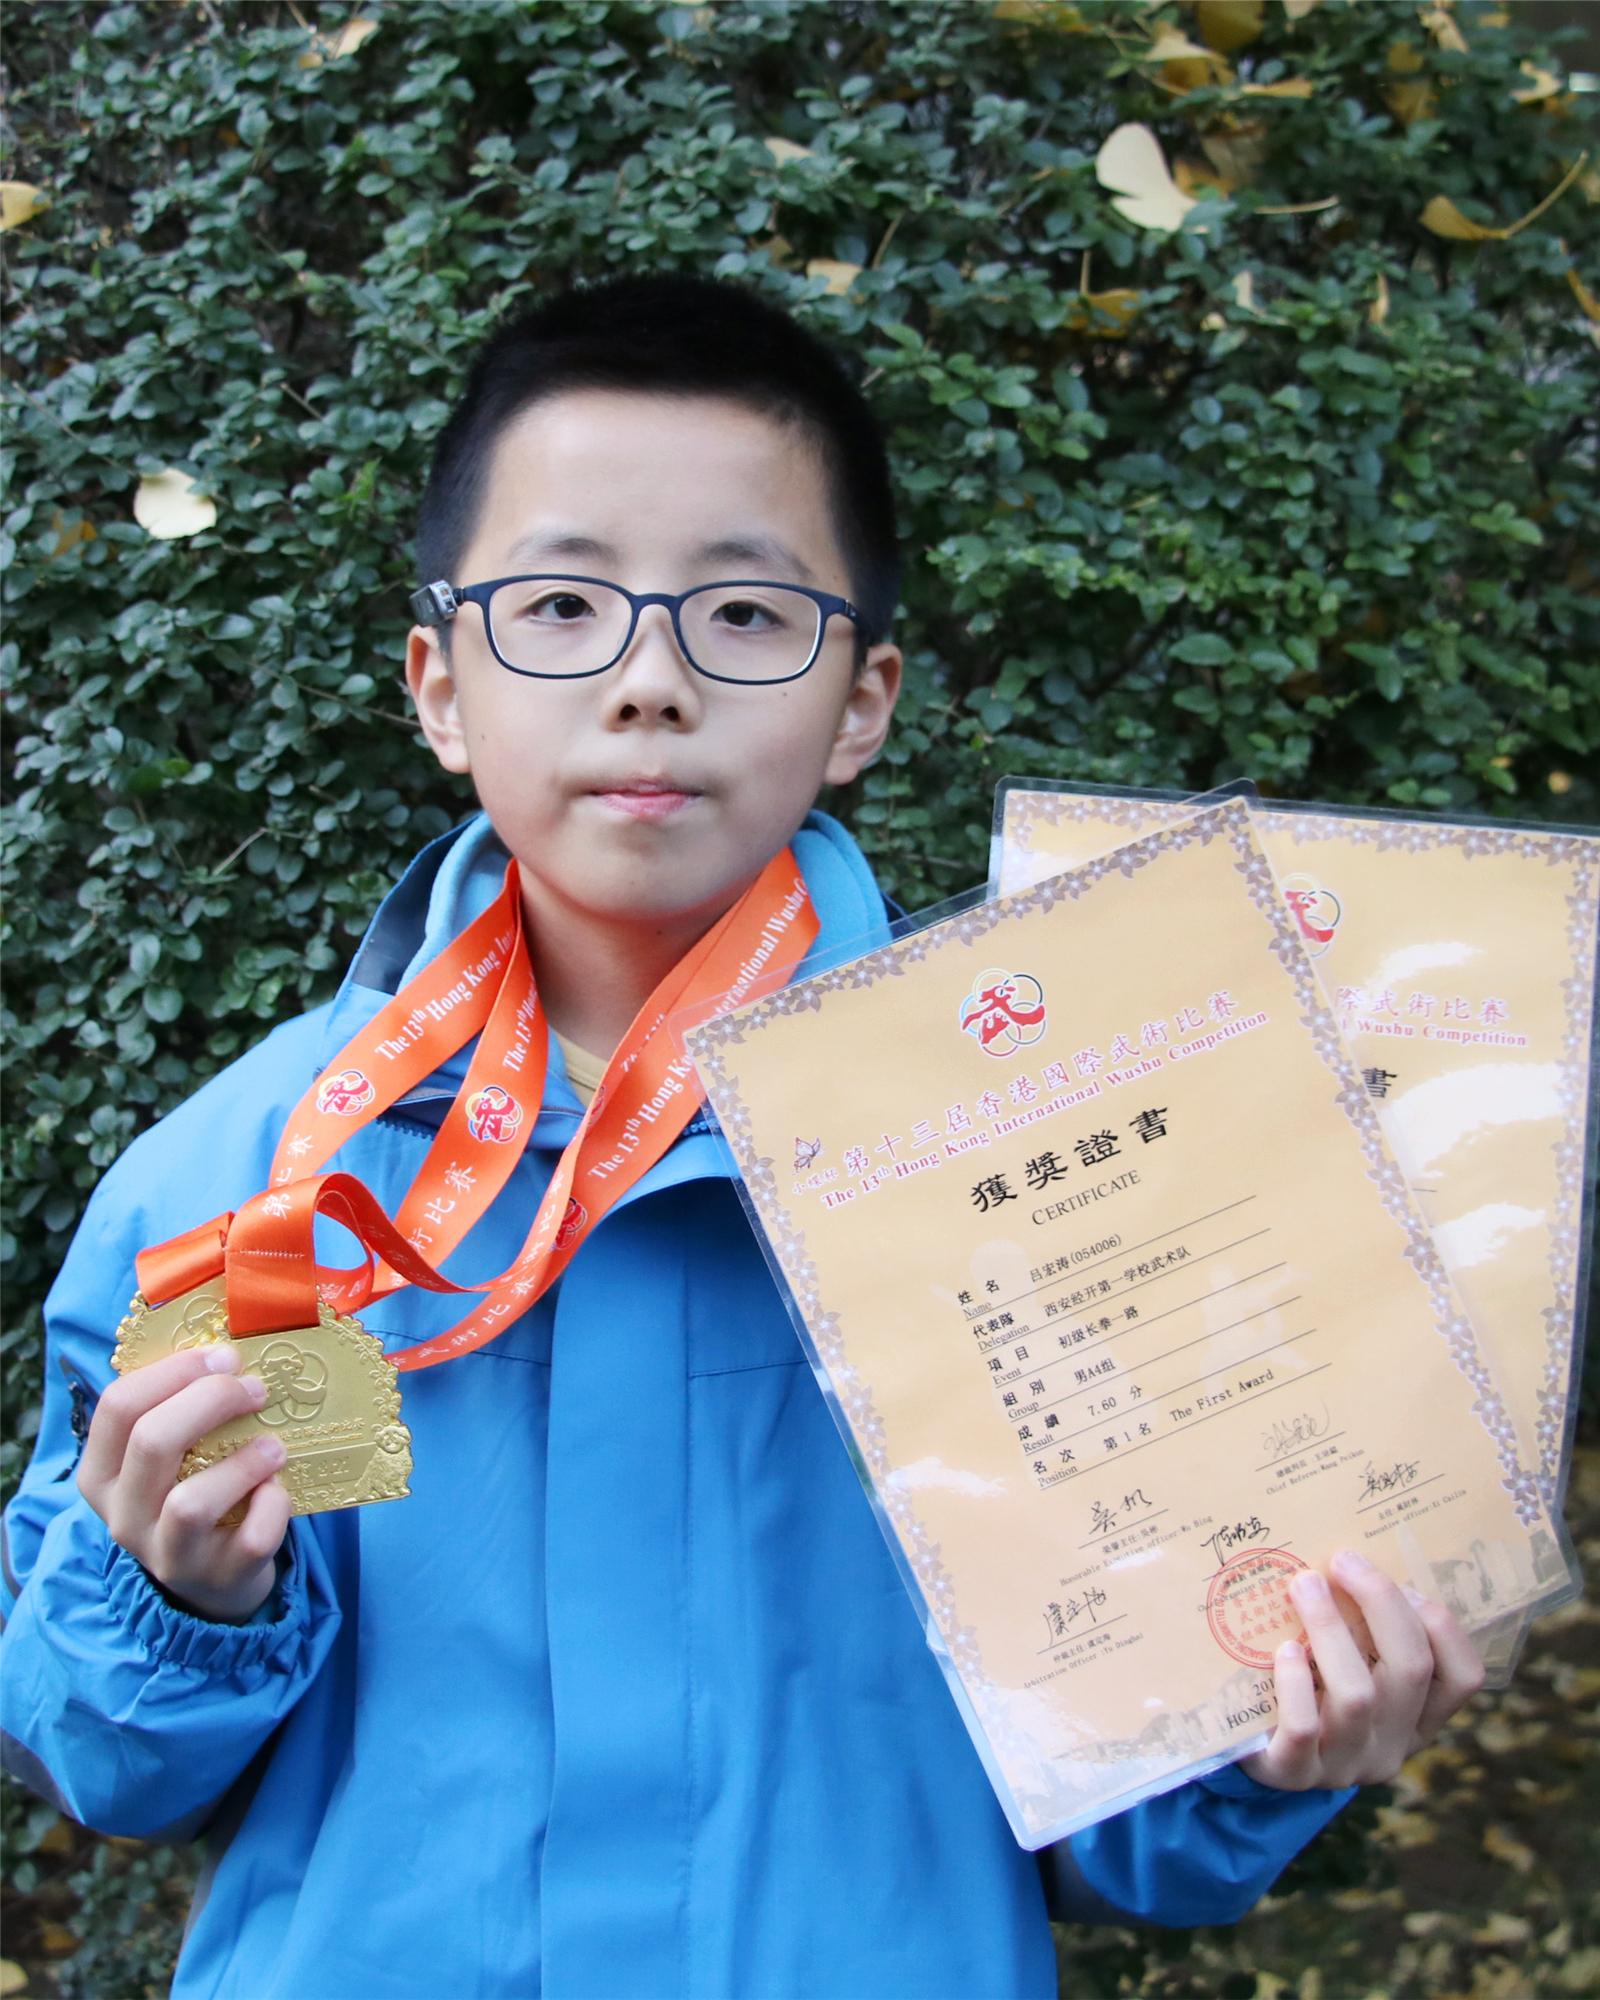 五年级六班 吕宏涛 第十三届香港国际武术比赛初级长拳一路男A4组第一名.jpg